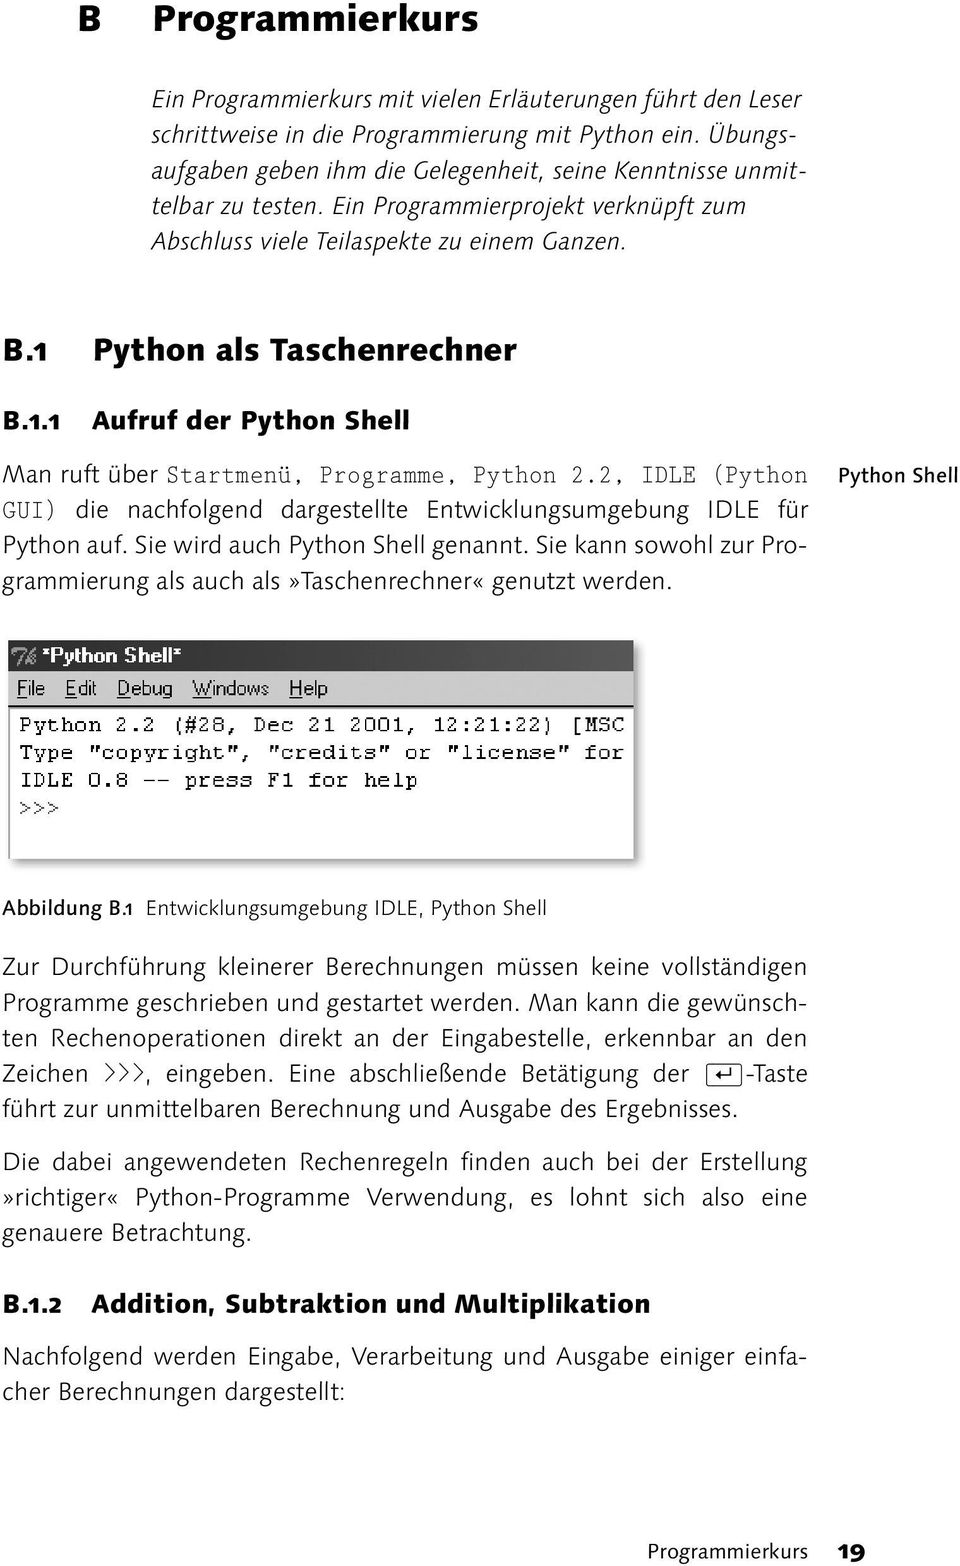 Python als Taschenrechner B.1.1 Aufruf der Python Shell Man ruft über Startmenü, Programme, Python 2.2, IDLE (Python GUI) die nachfolgend dargestellte Entwicklungsumgebung IDLE für Python auf.